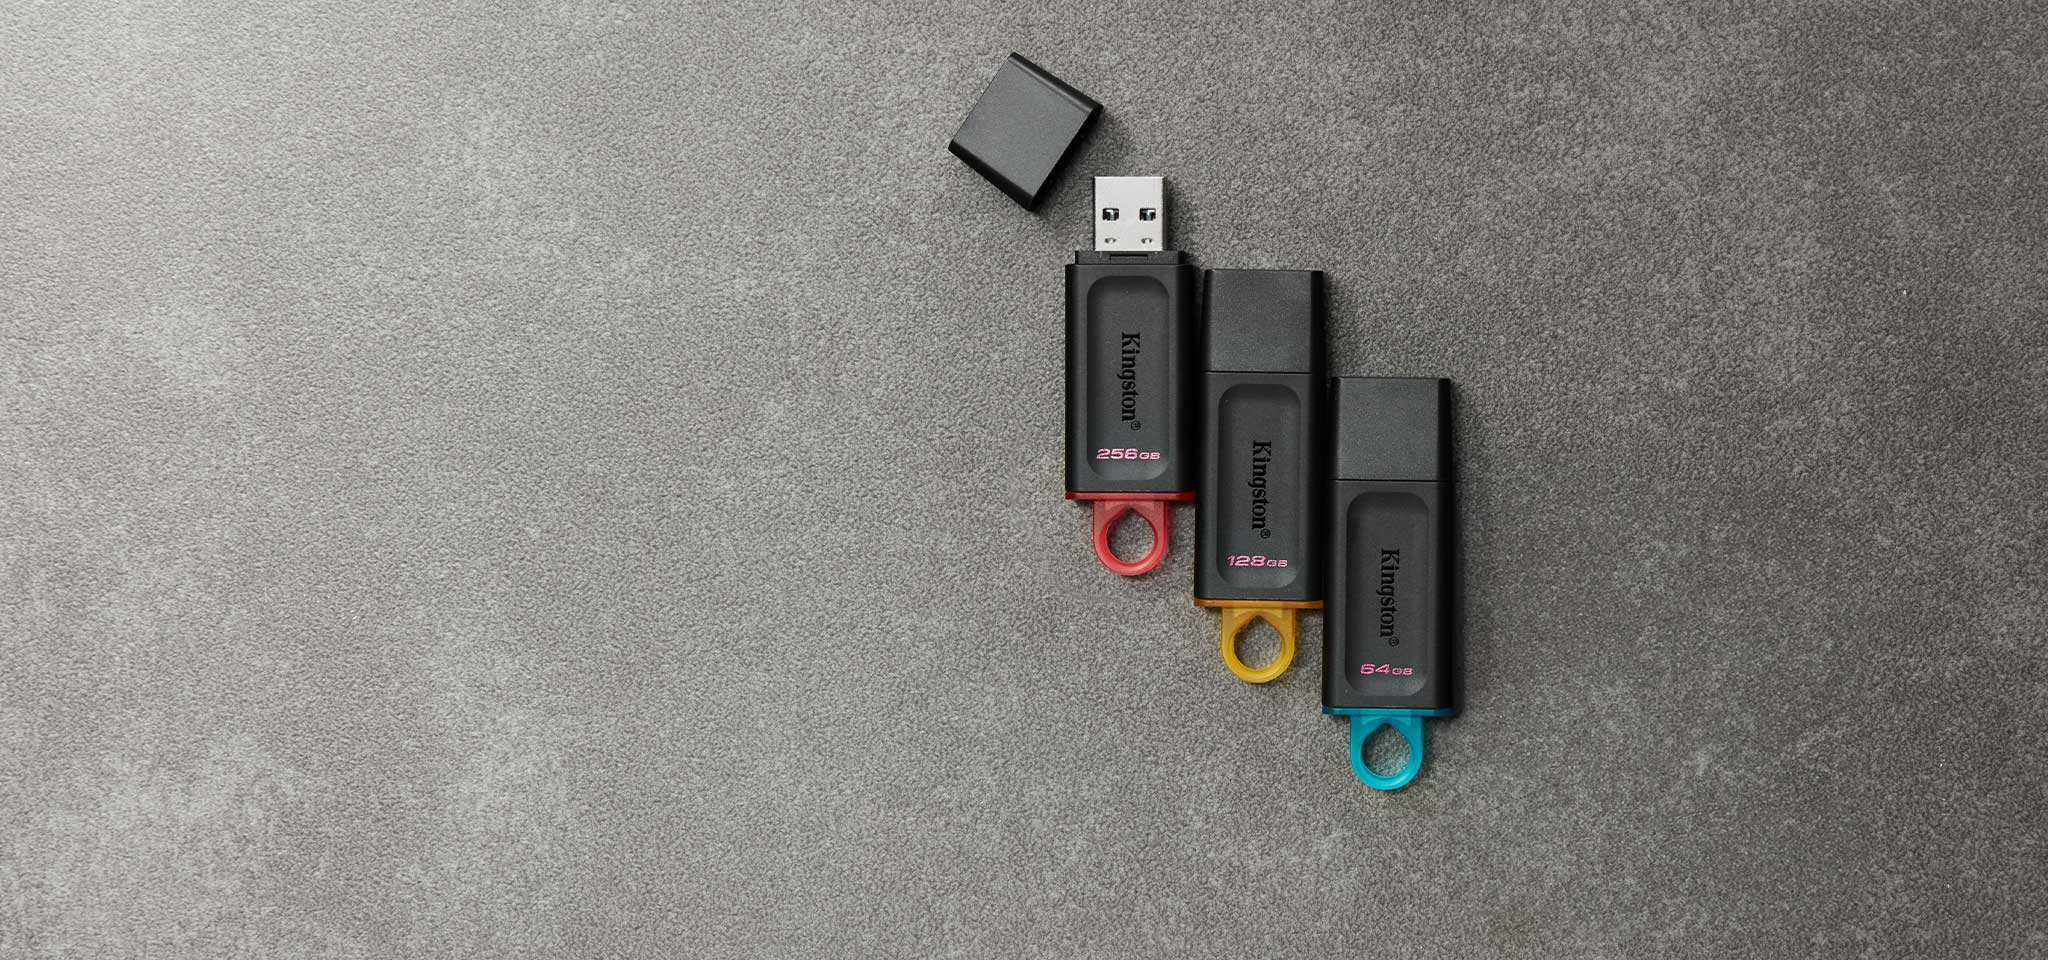 Vue de dessus de quatre clés USB Exodia de différentes couleurs selon la capacité, sur une moquette grise